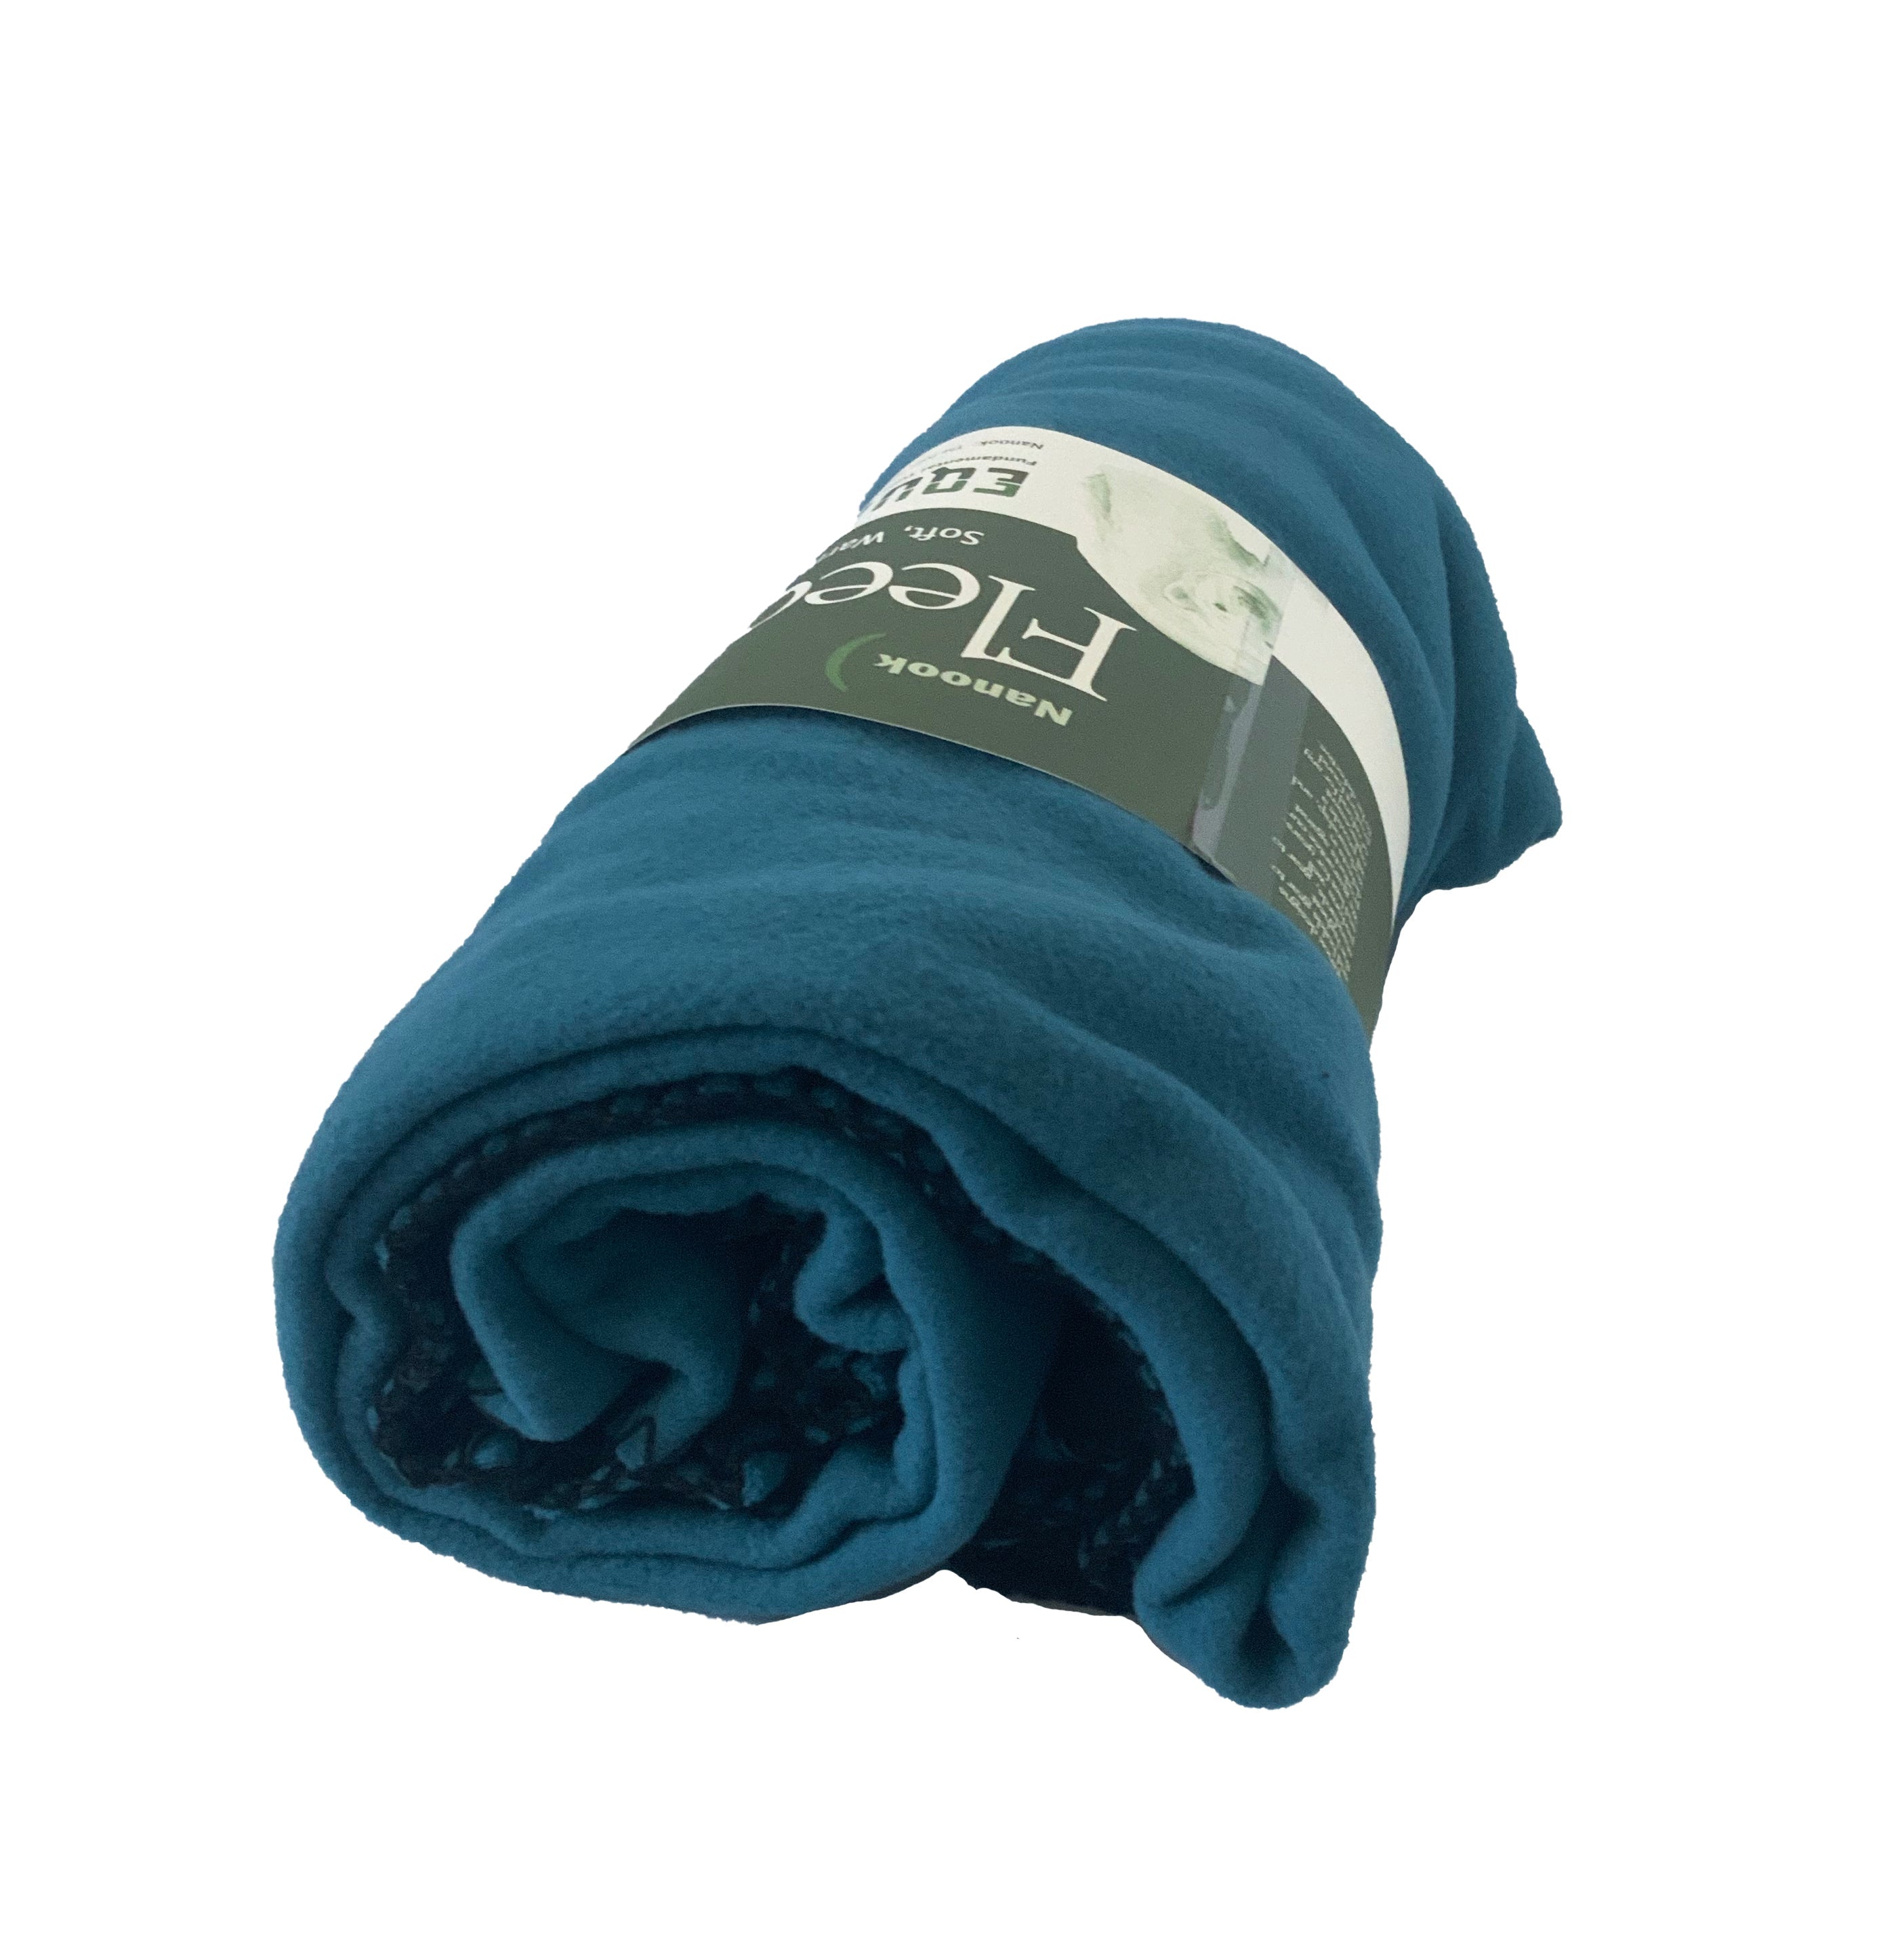 Equinox | Nomad Fleece Blanket, Blankets, Equinox, Defiance Outdoor Gear Co.